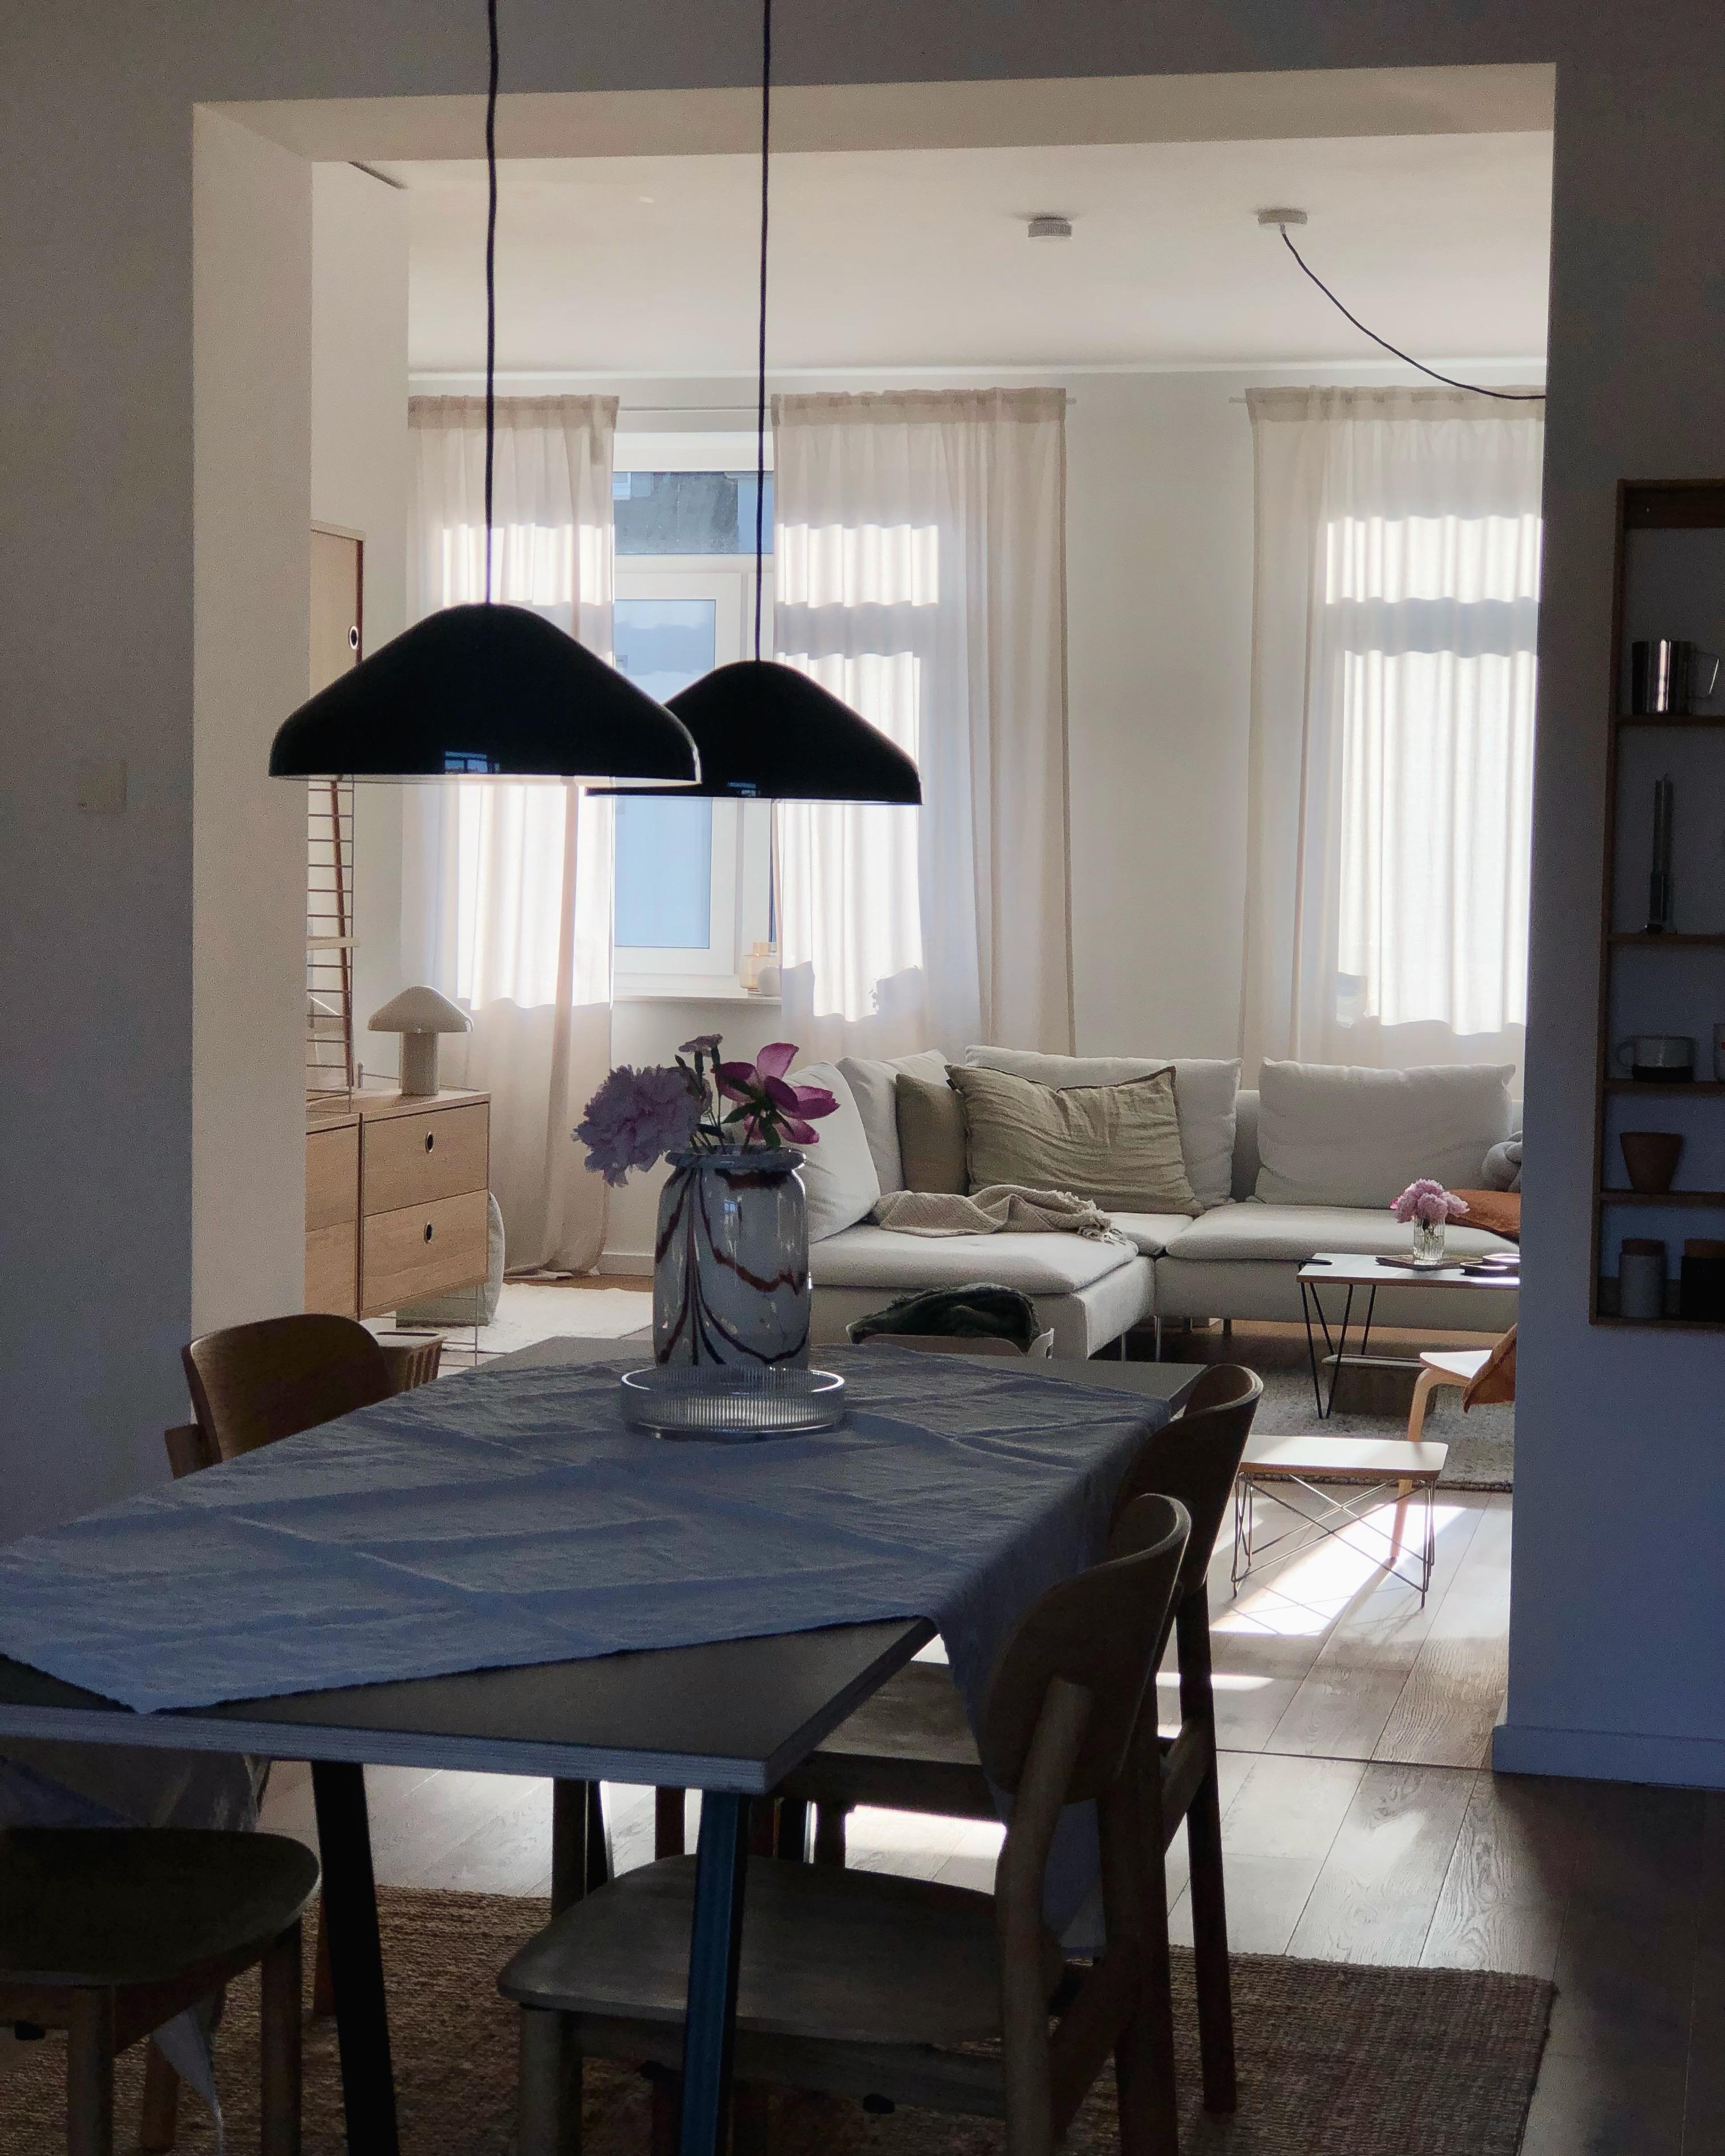 #wohnzimmer #livingroom #couch #sofa #ikea #söderhamn #küche #kitchen #esstisch #skandinavisch #interior